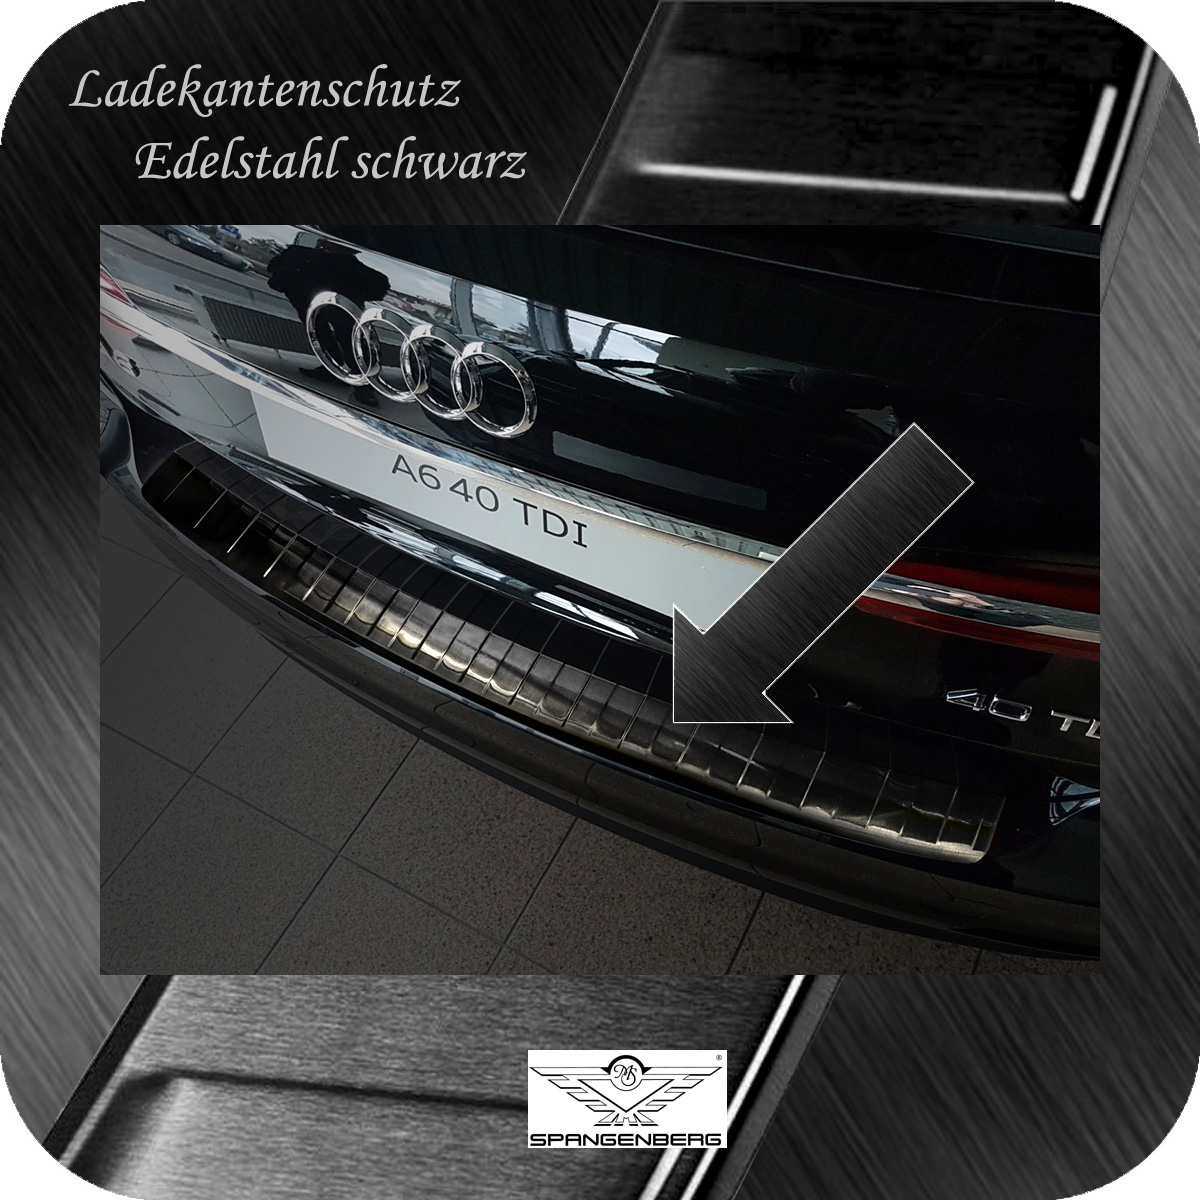 Ladekantenschutz Edelstahl schwarz für Audi A6 Avant Typ C8 ab 04.2018- 3245192